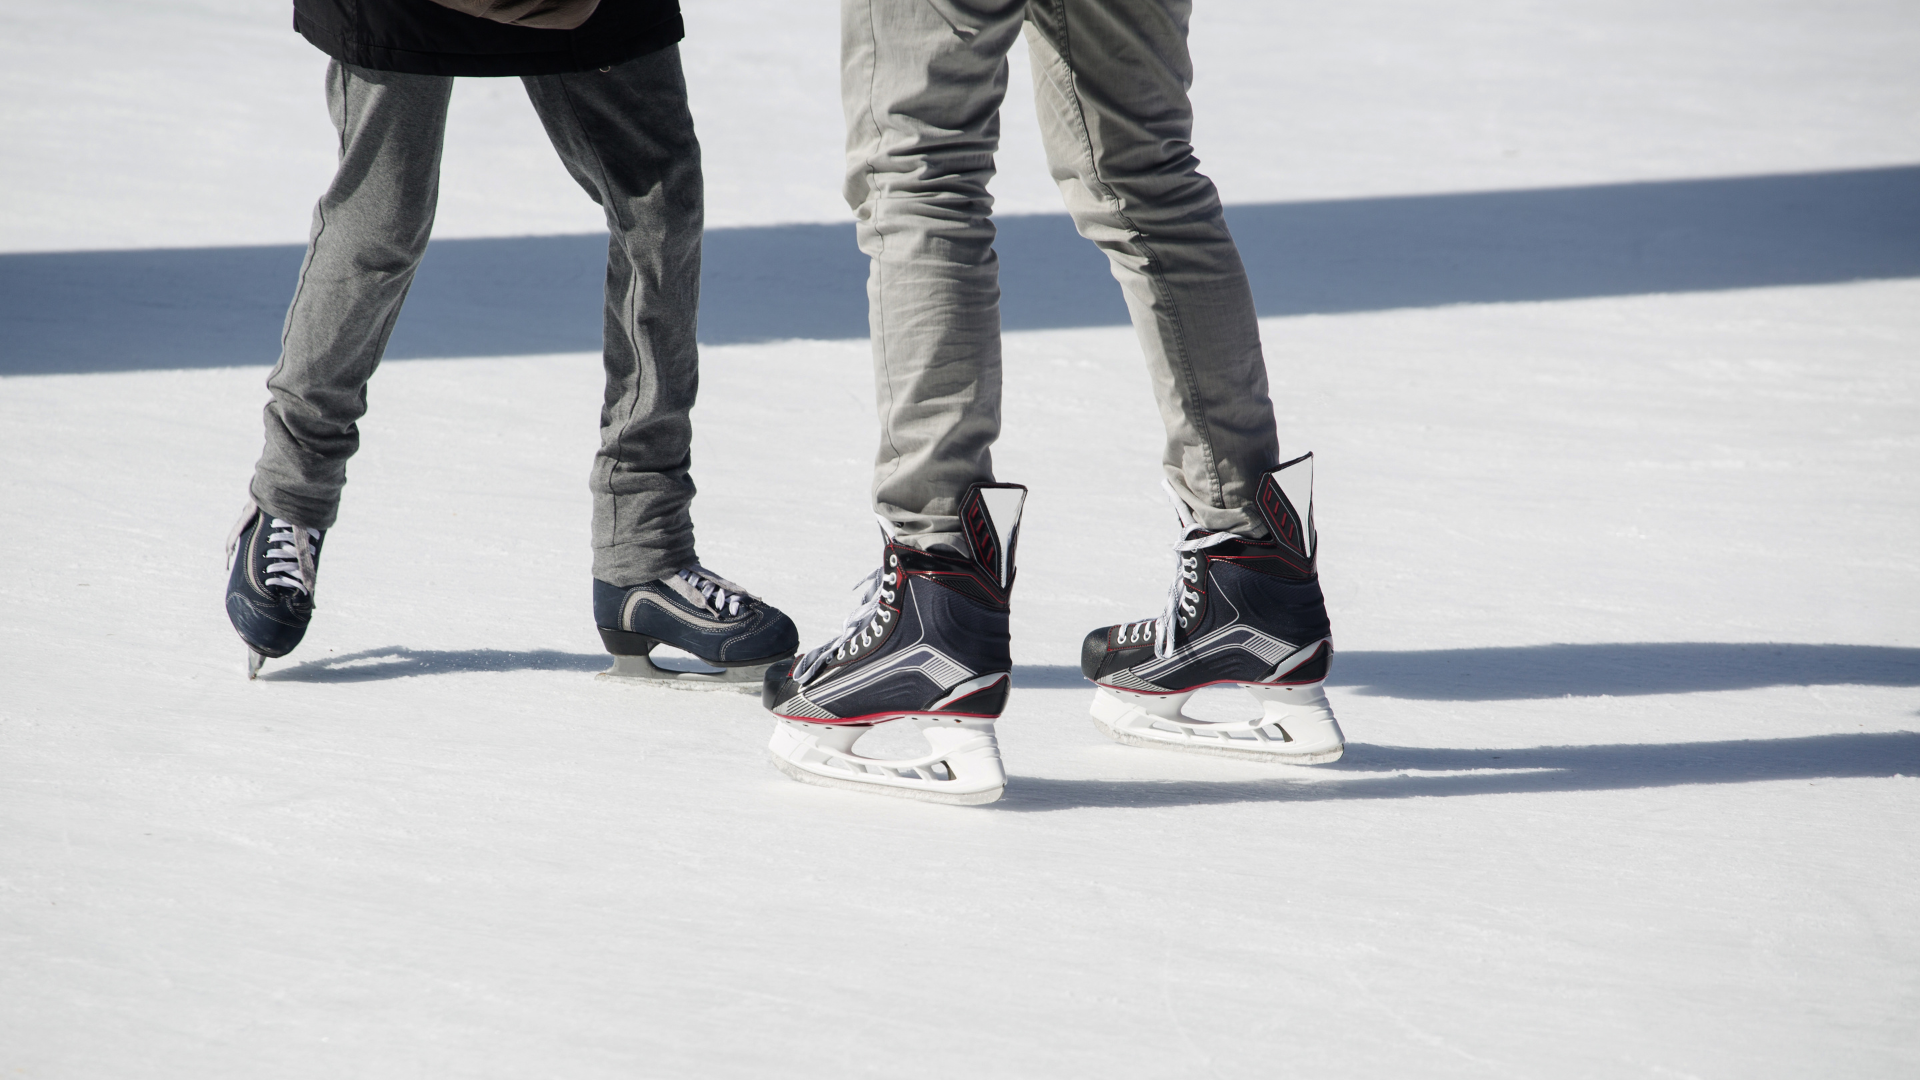 K2 Alexis Ice gris-vert patins à glace femme - Echo sports